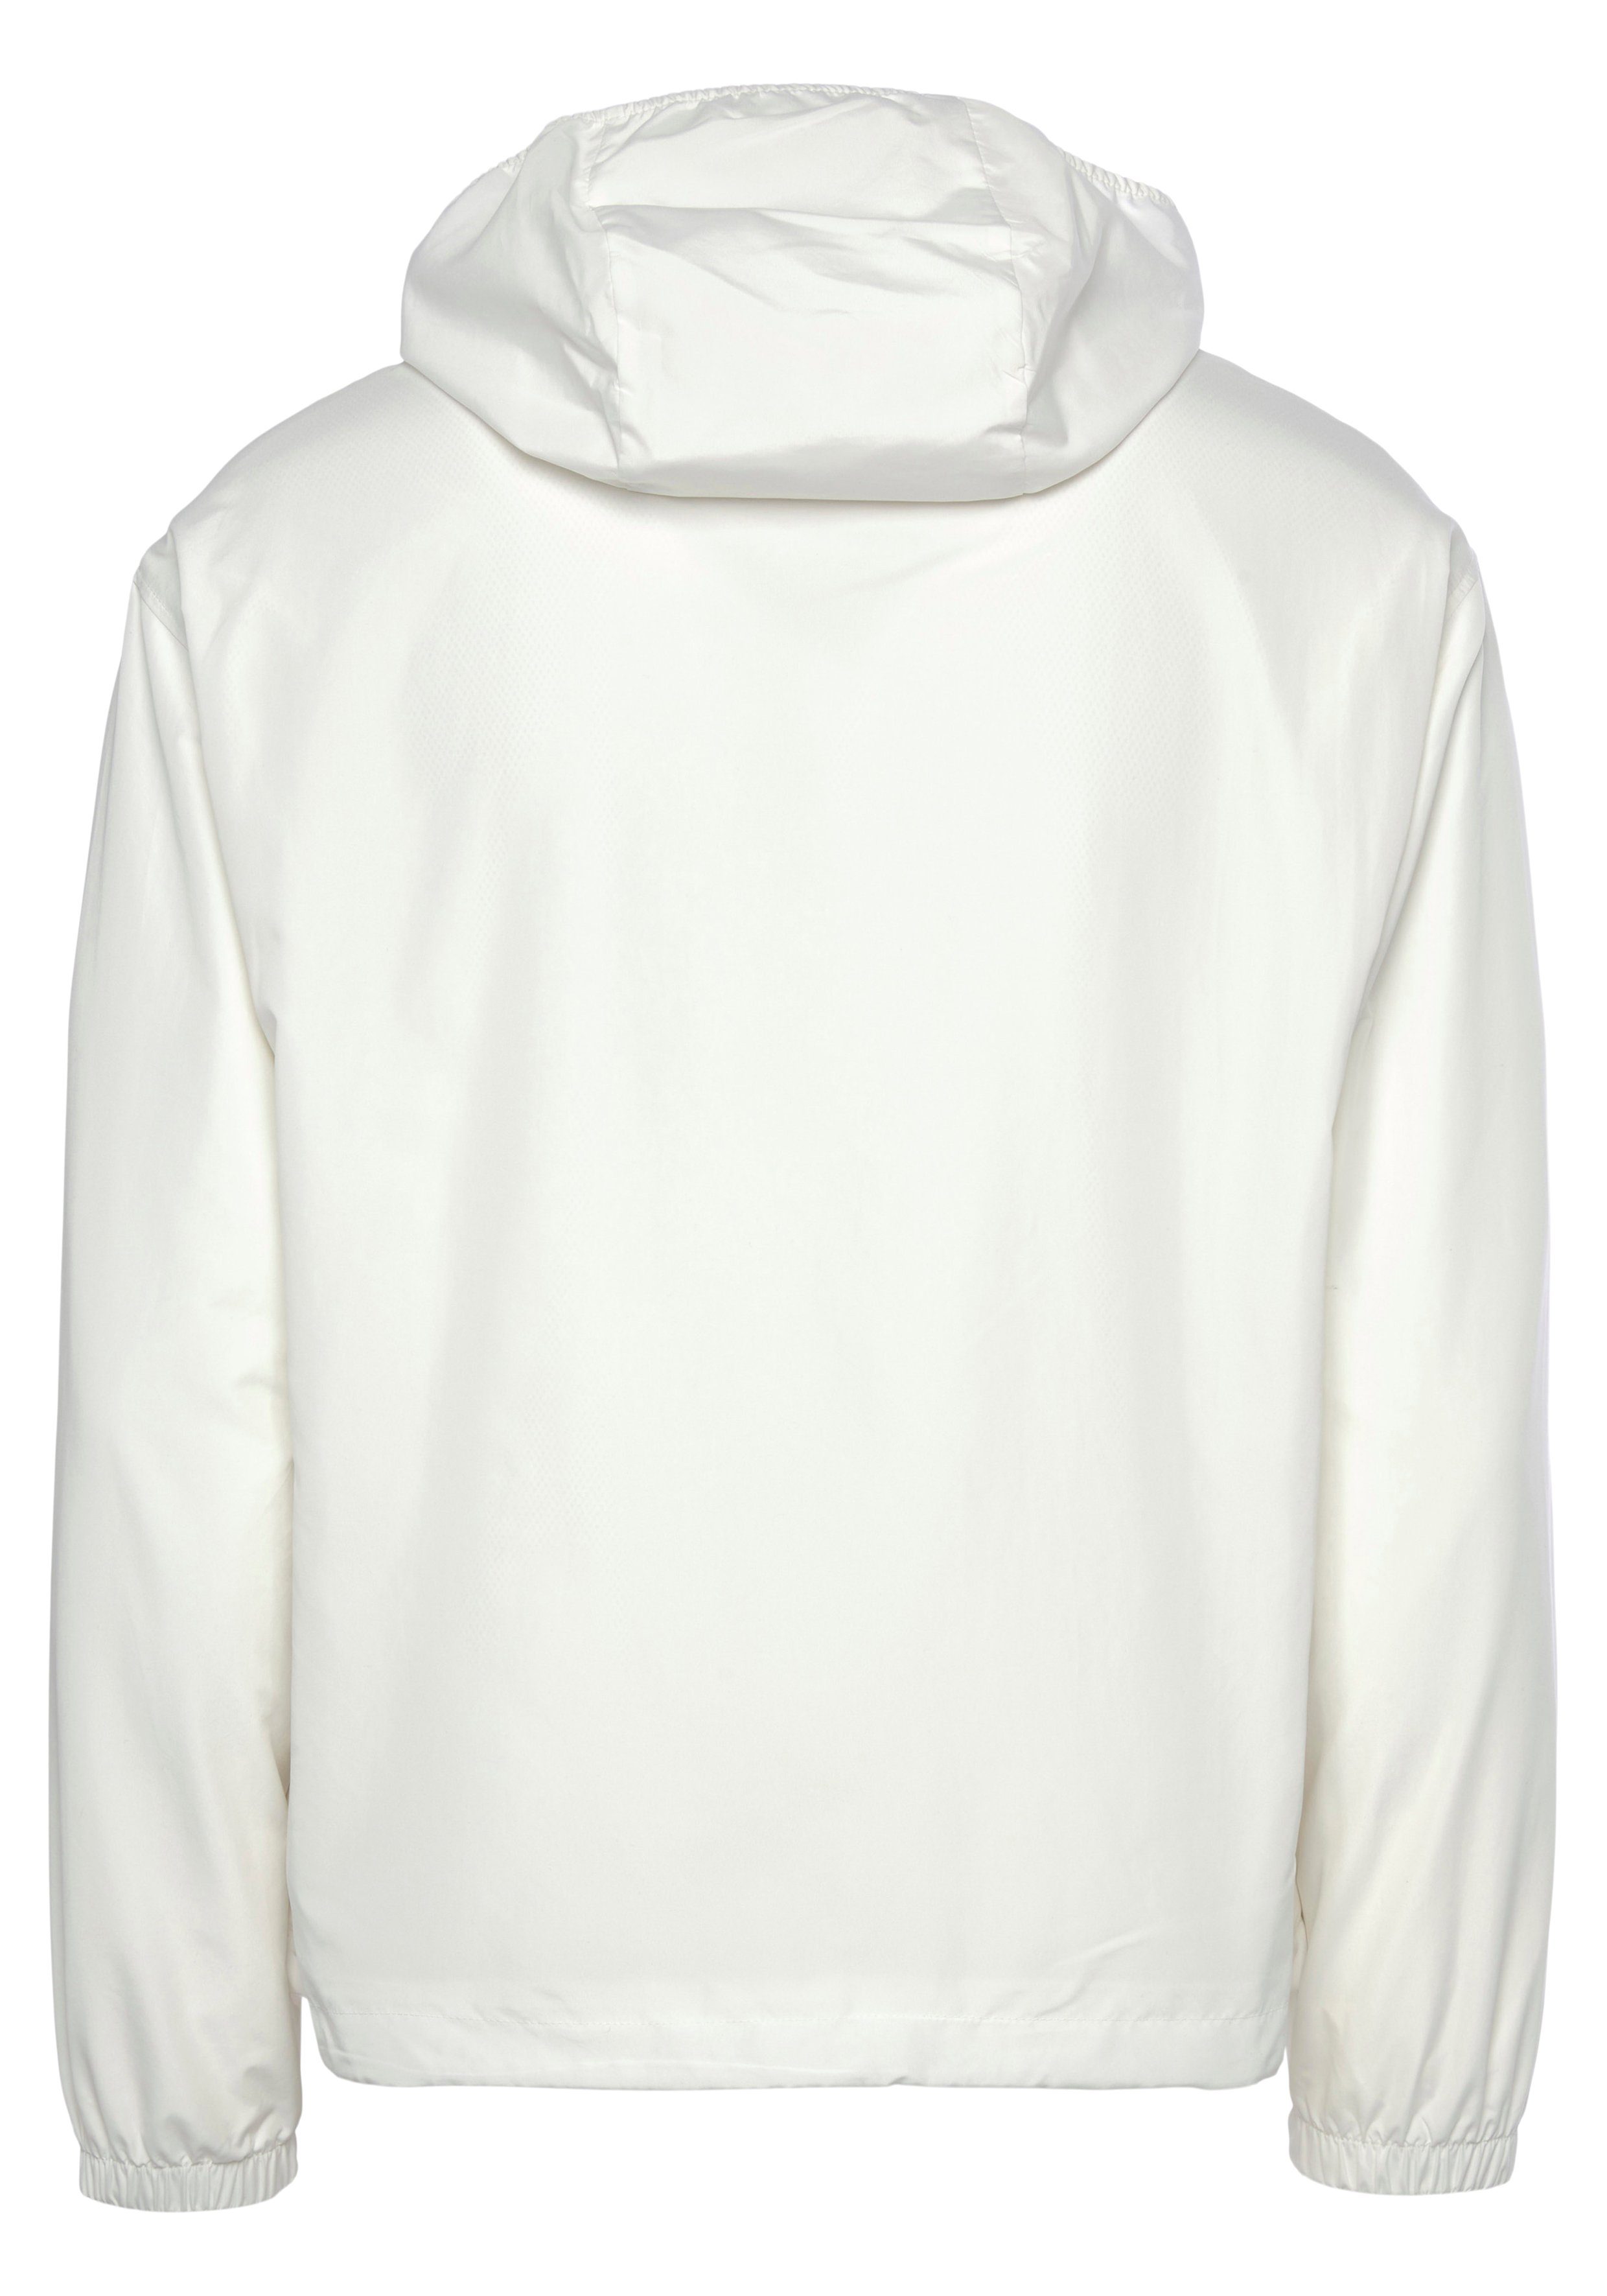 Lacoste Trainingsjacke TRAININGSJACKE wasserabweisende Jacke Tennis Kapuze, weiß abnehmbarer mit Perfekt für